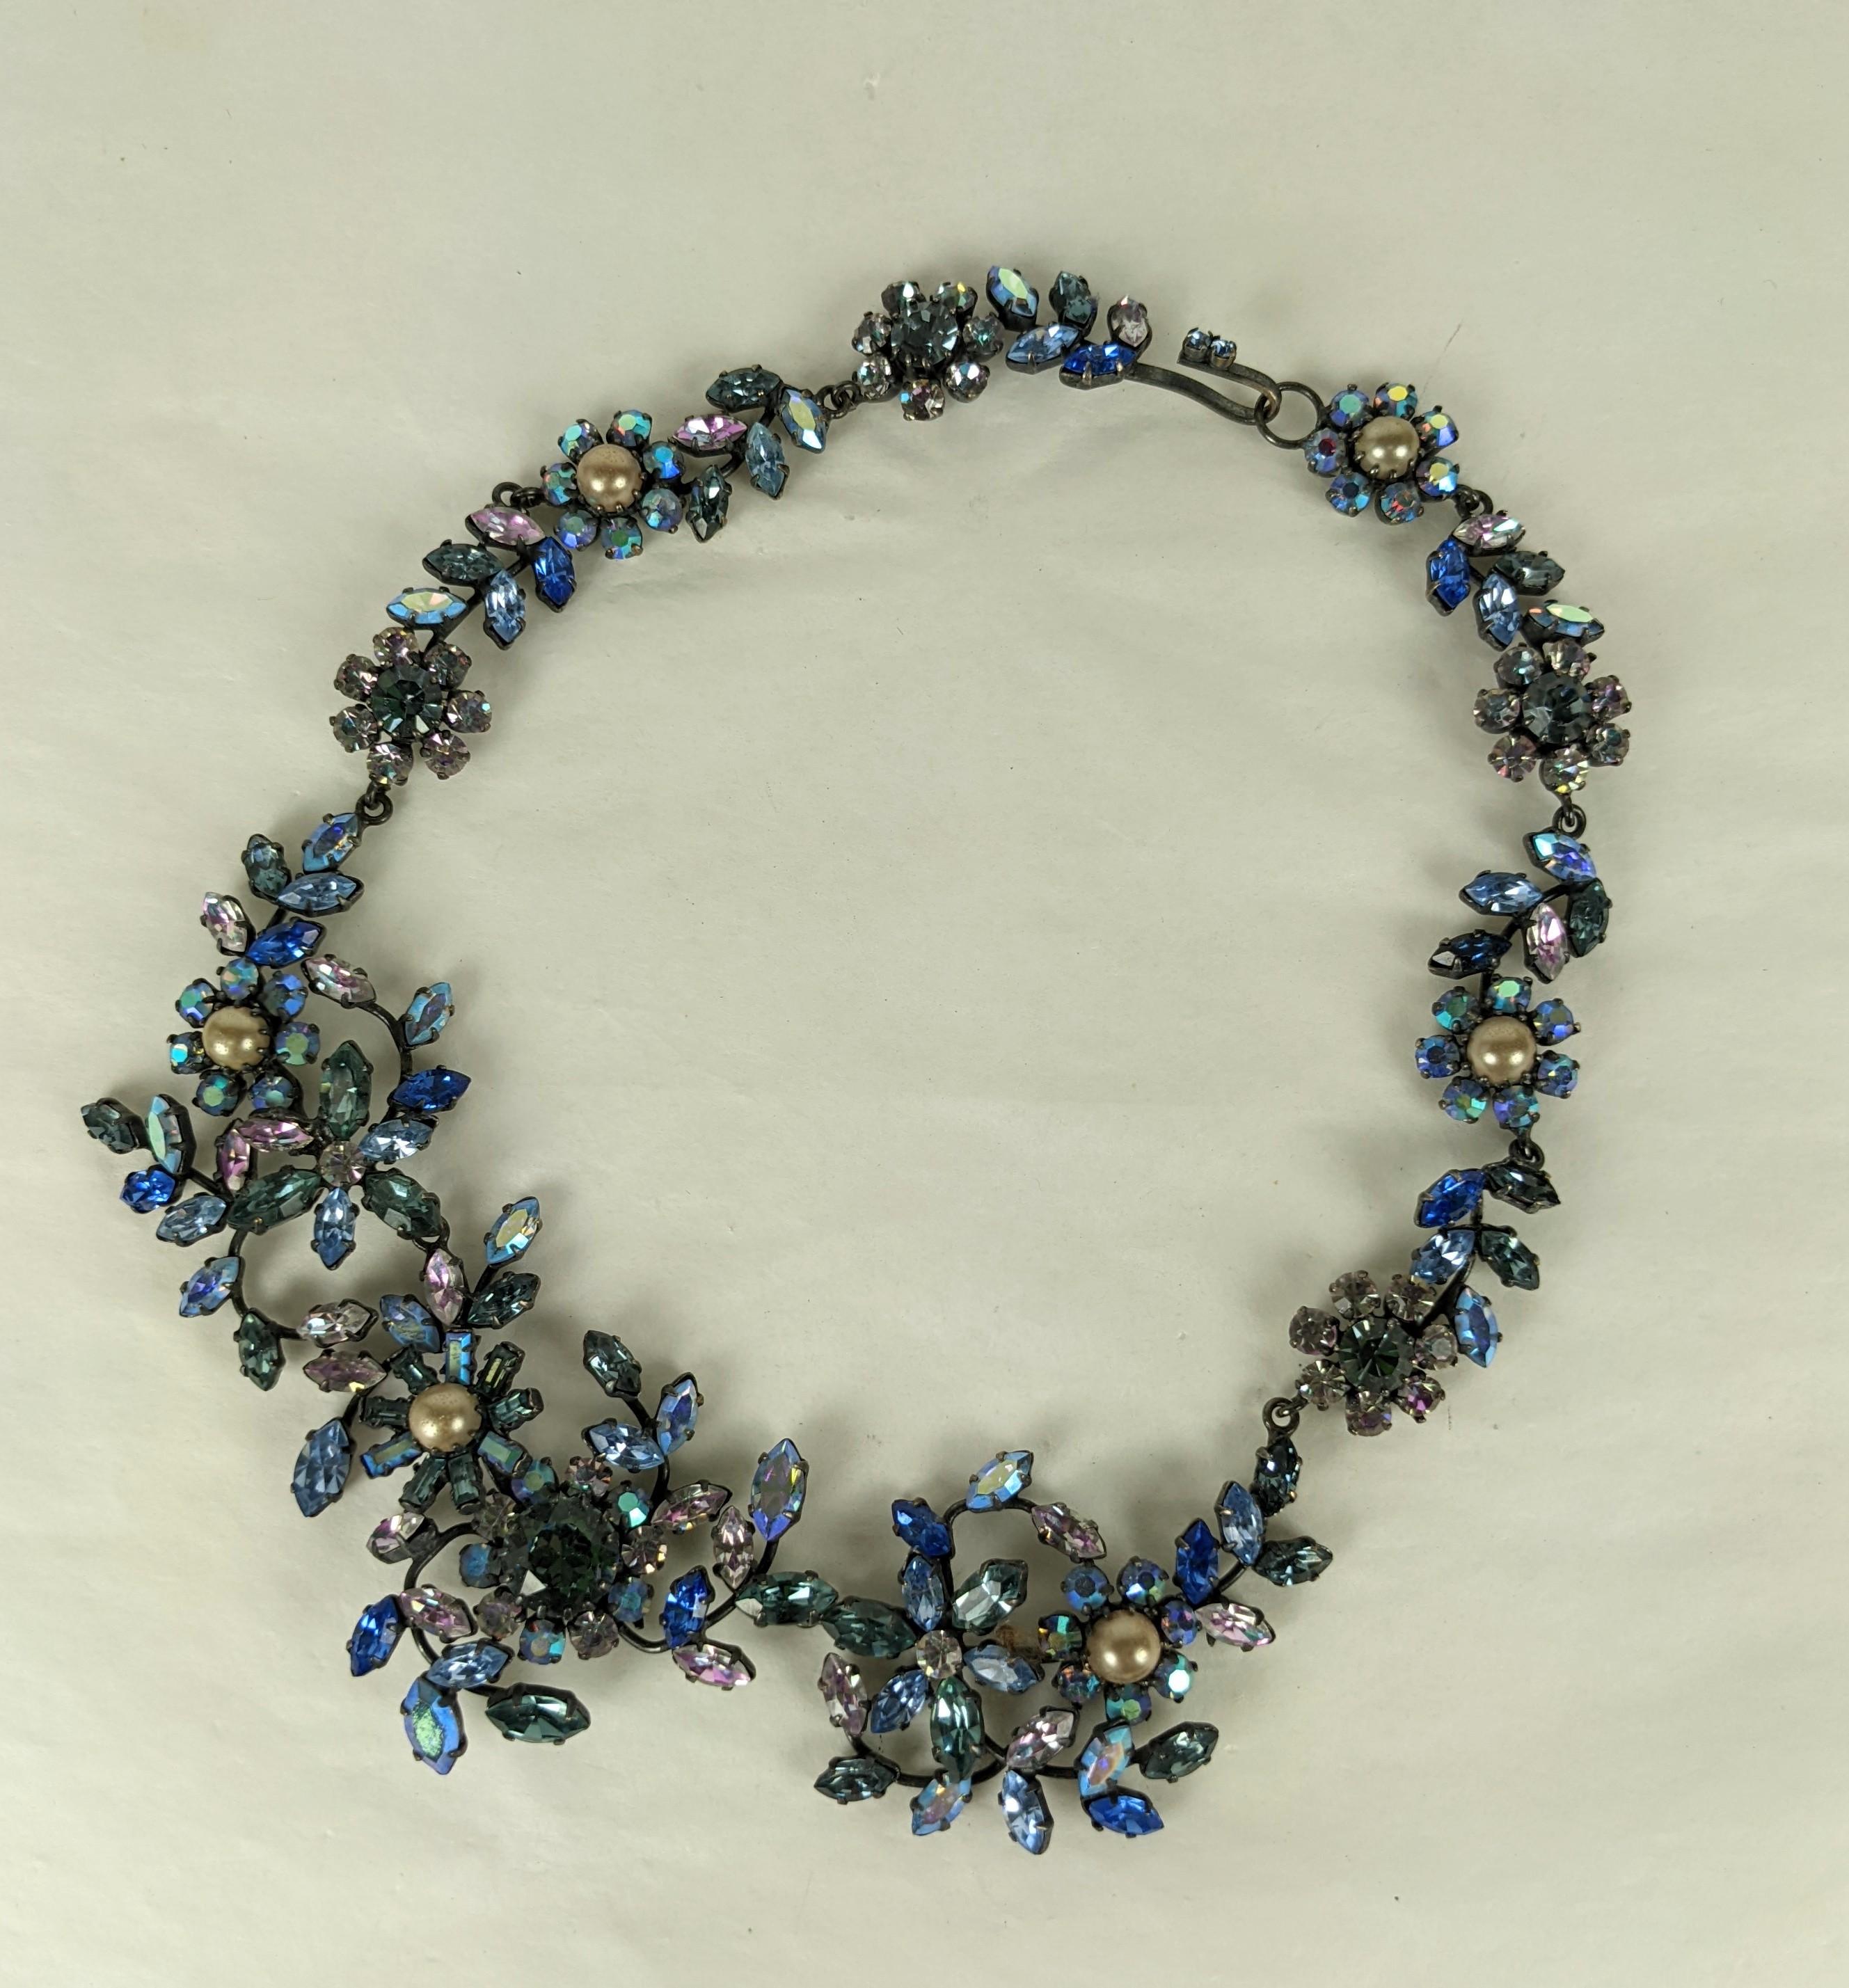 Lätzchen aus österreichischem Kristall im Aurora-Girlanden-Stil aus den 1950er Jahren. Von Hand gefasste, verschiedenfarbige Steine in Blau, Rauch, Lila und Aurora werden in diesem dimensionalen, floralen Lätzchen verwendet, das auf japoniertem